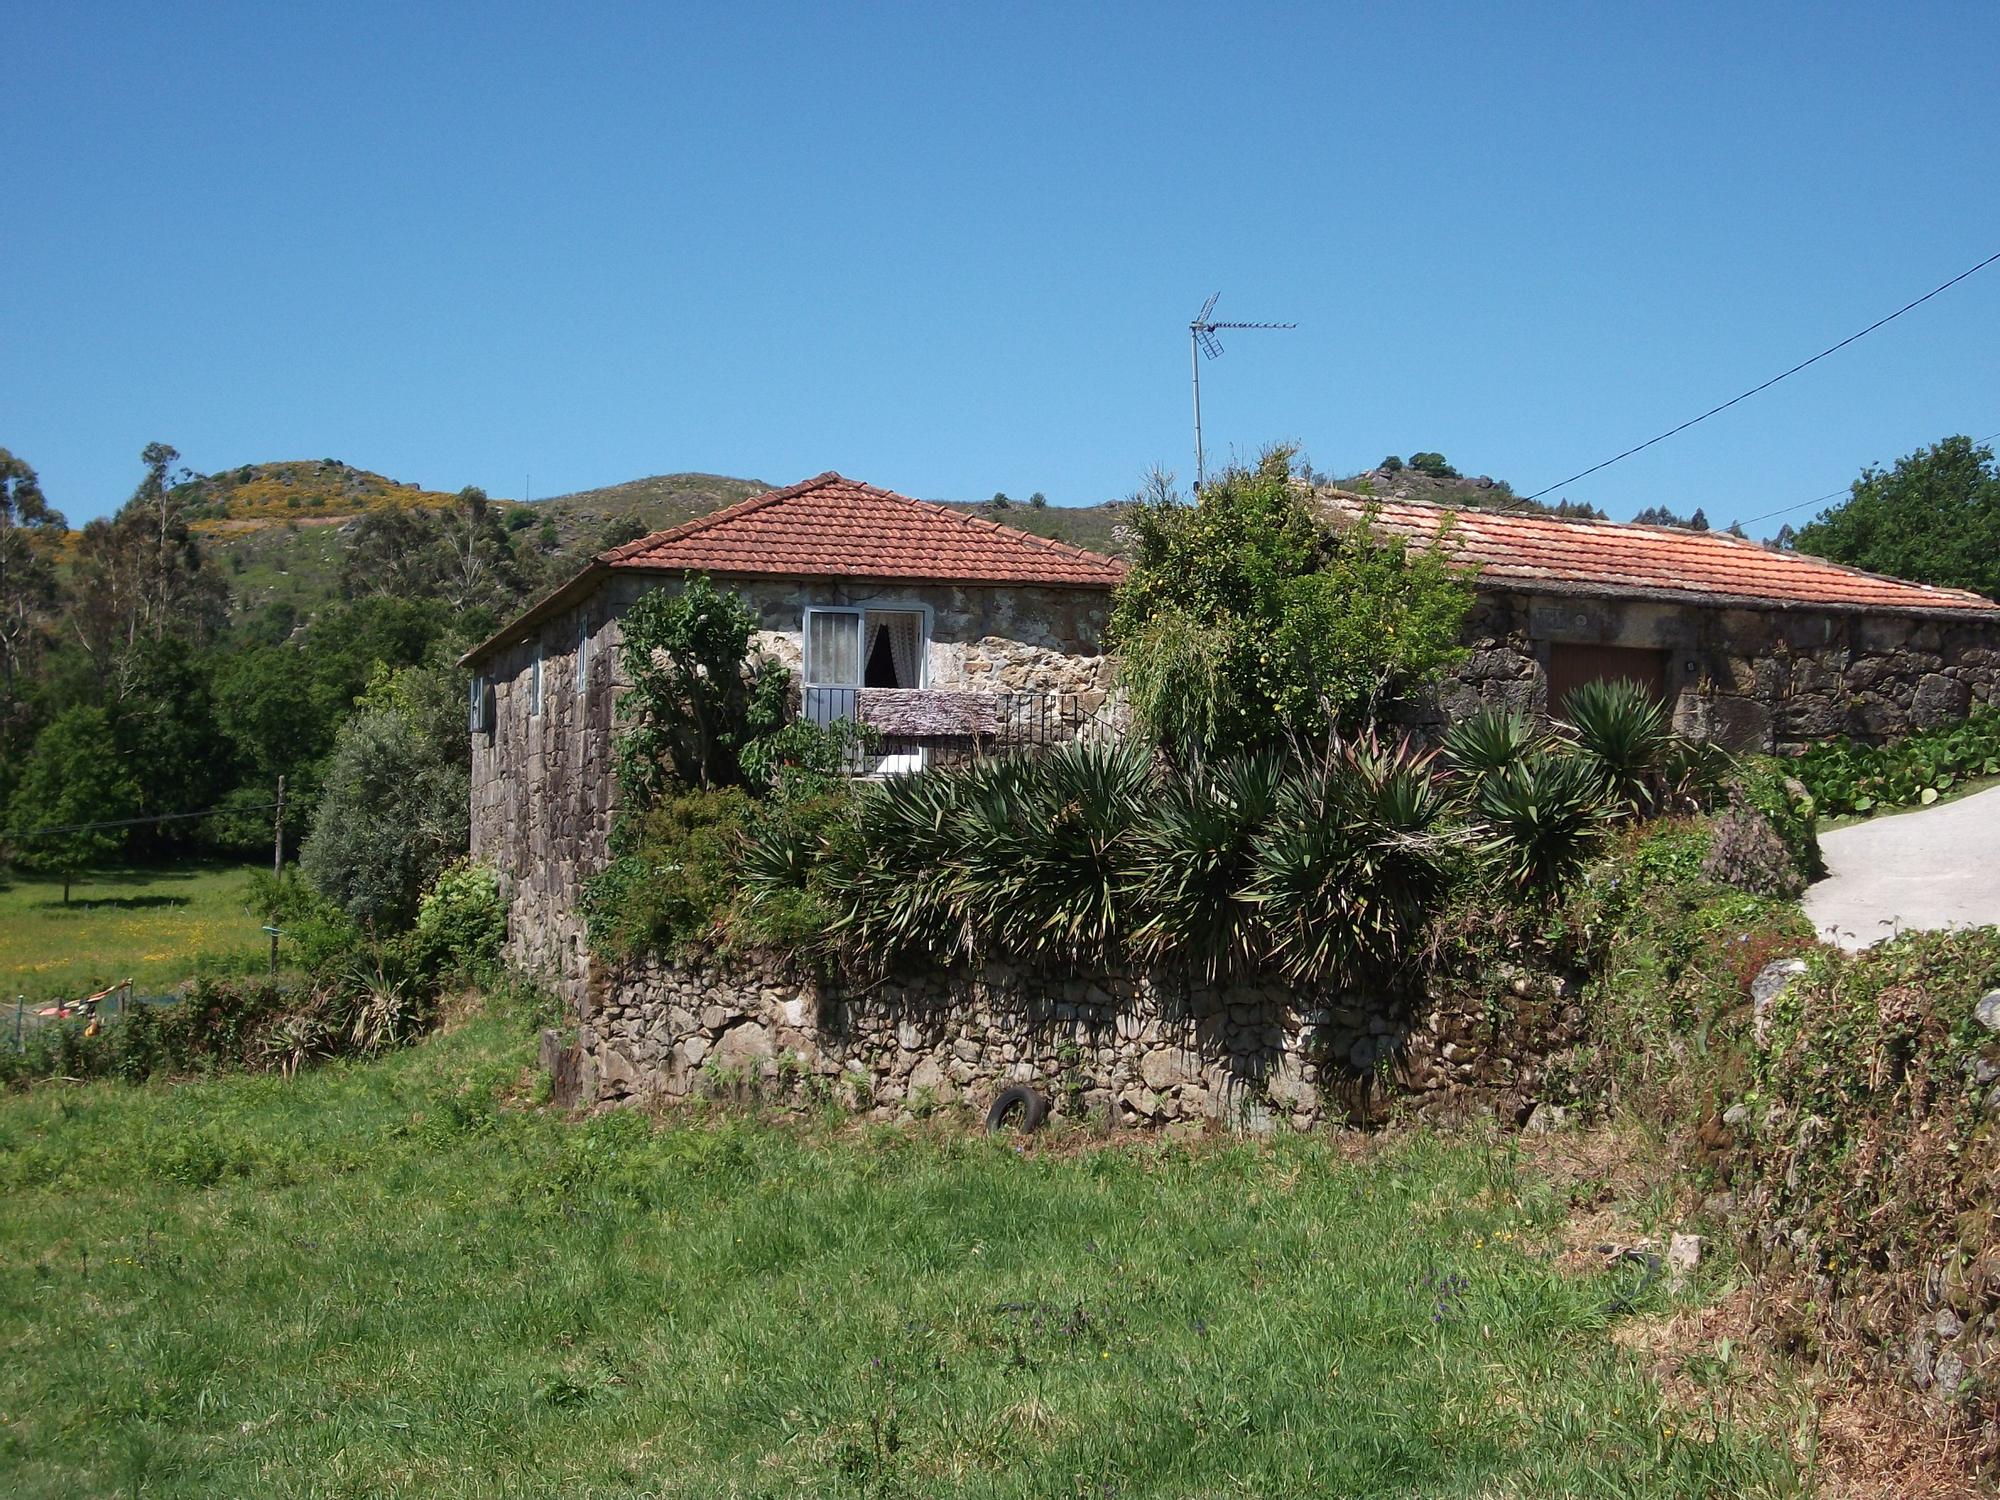 Casa do casal, onde naceu o mestre Cerviño en Cerdedo/Cotobade.